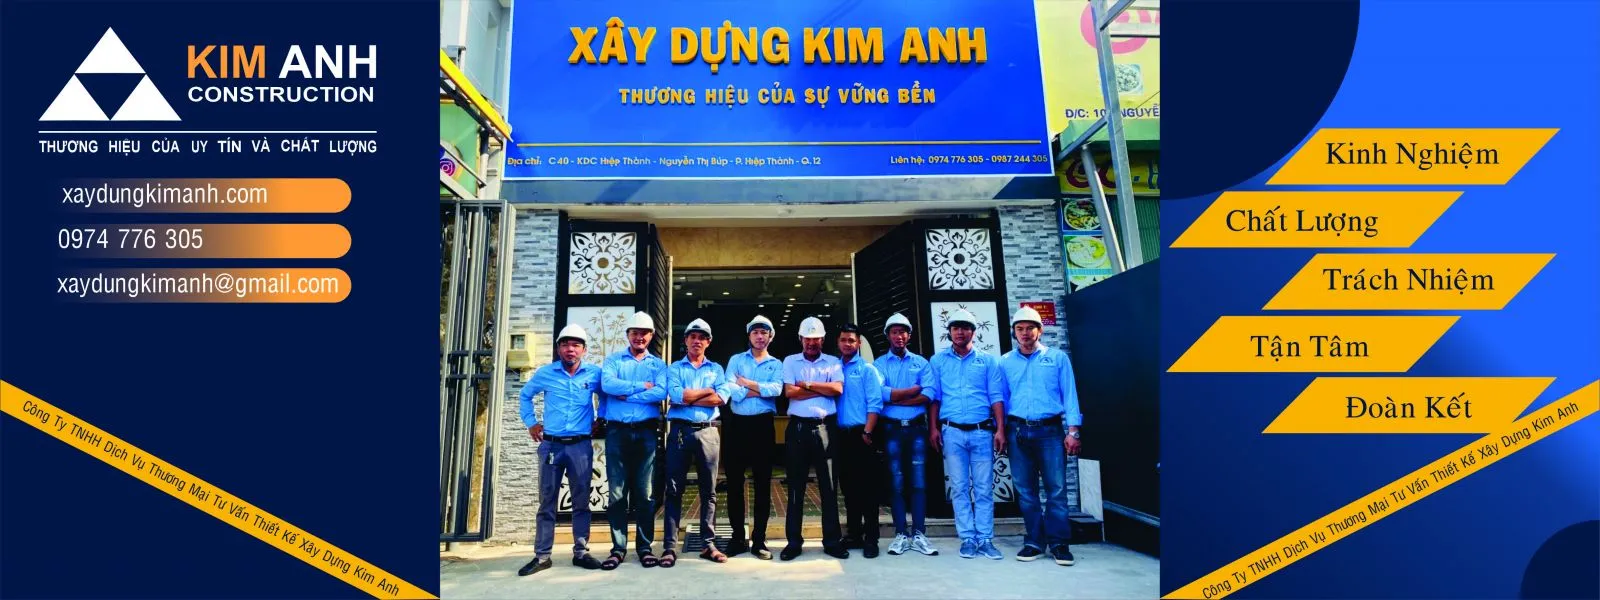 Xây Dựng Kim Anh: Công ty xây dựng Huyện Hóc Môn